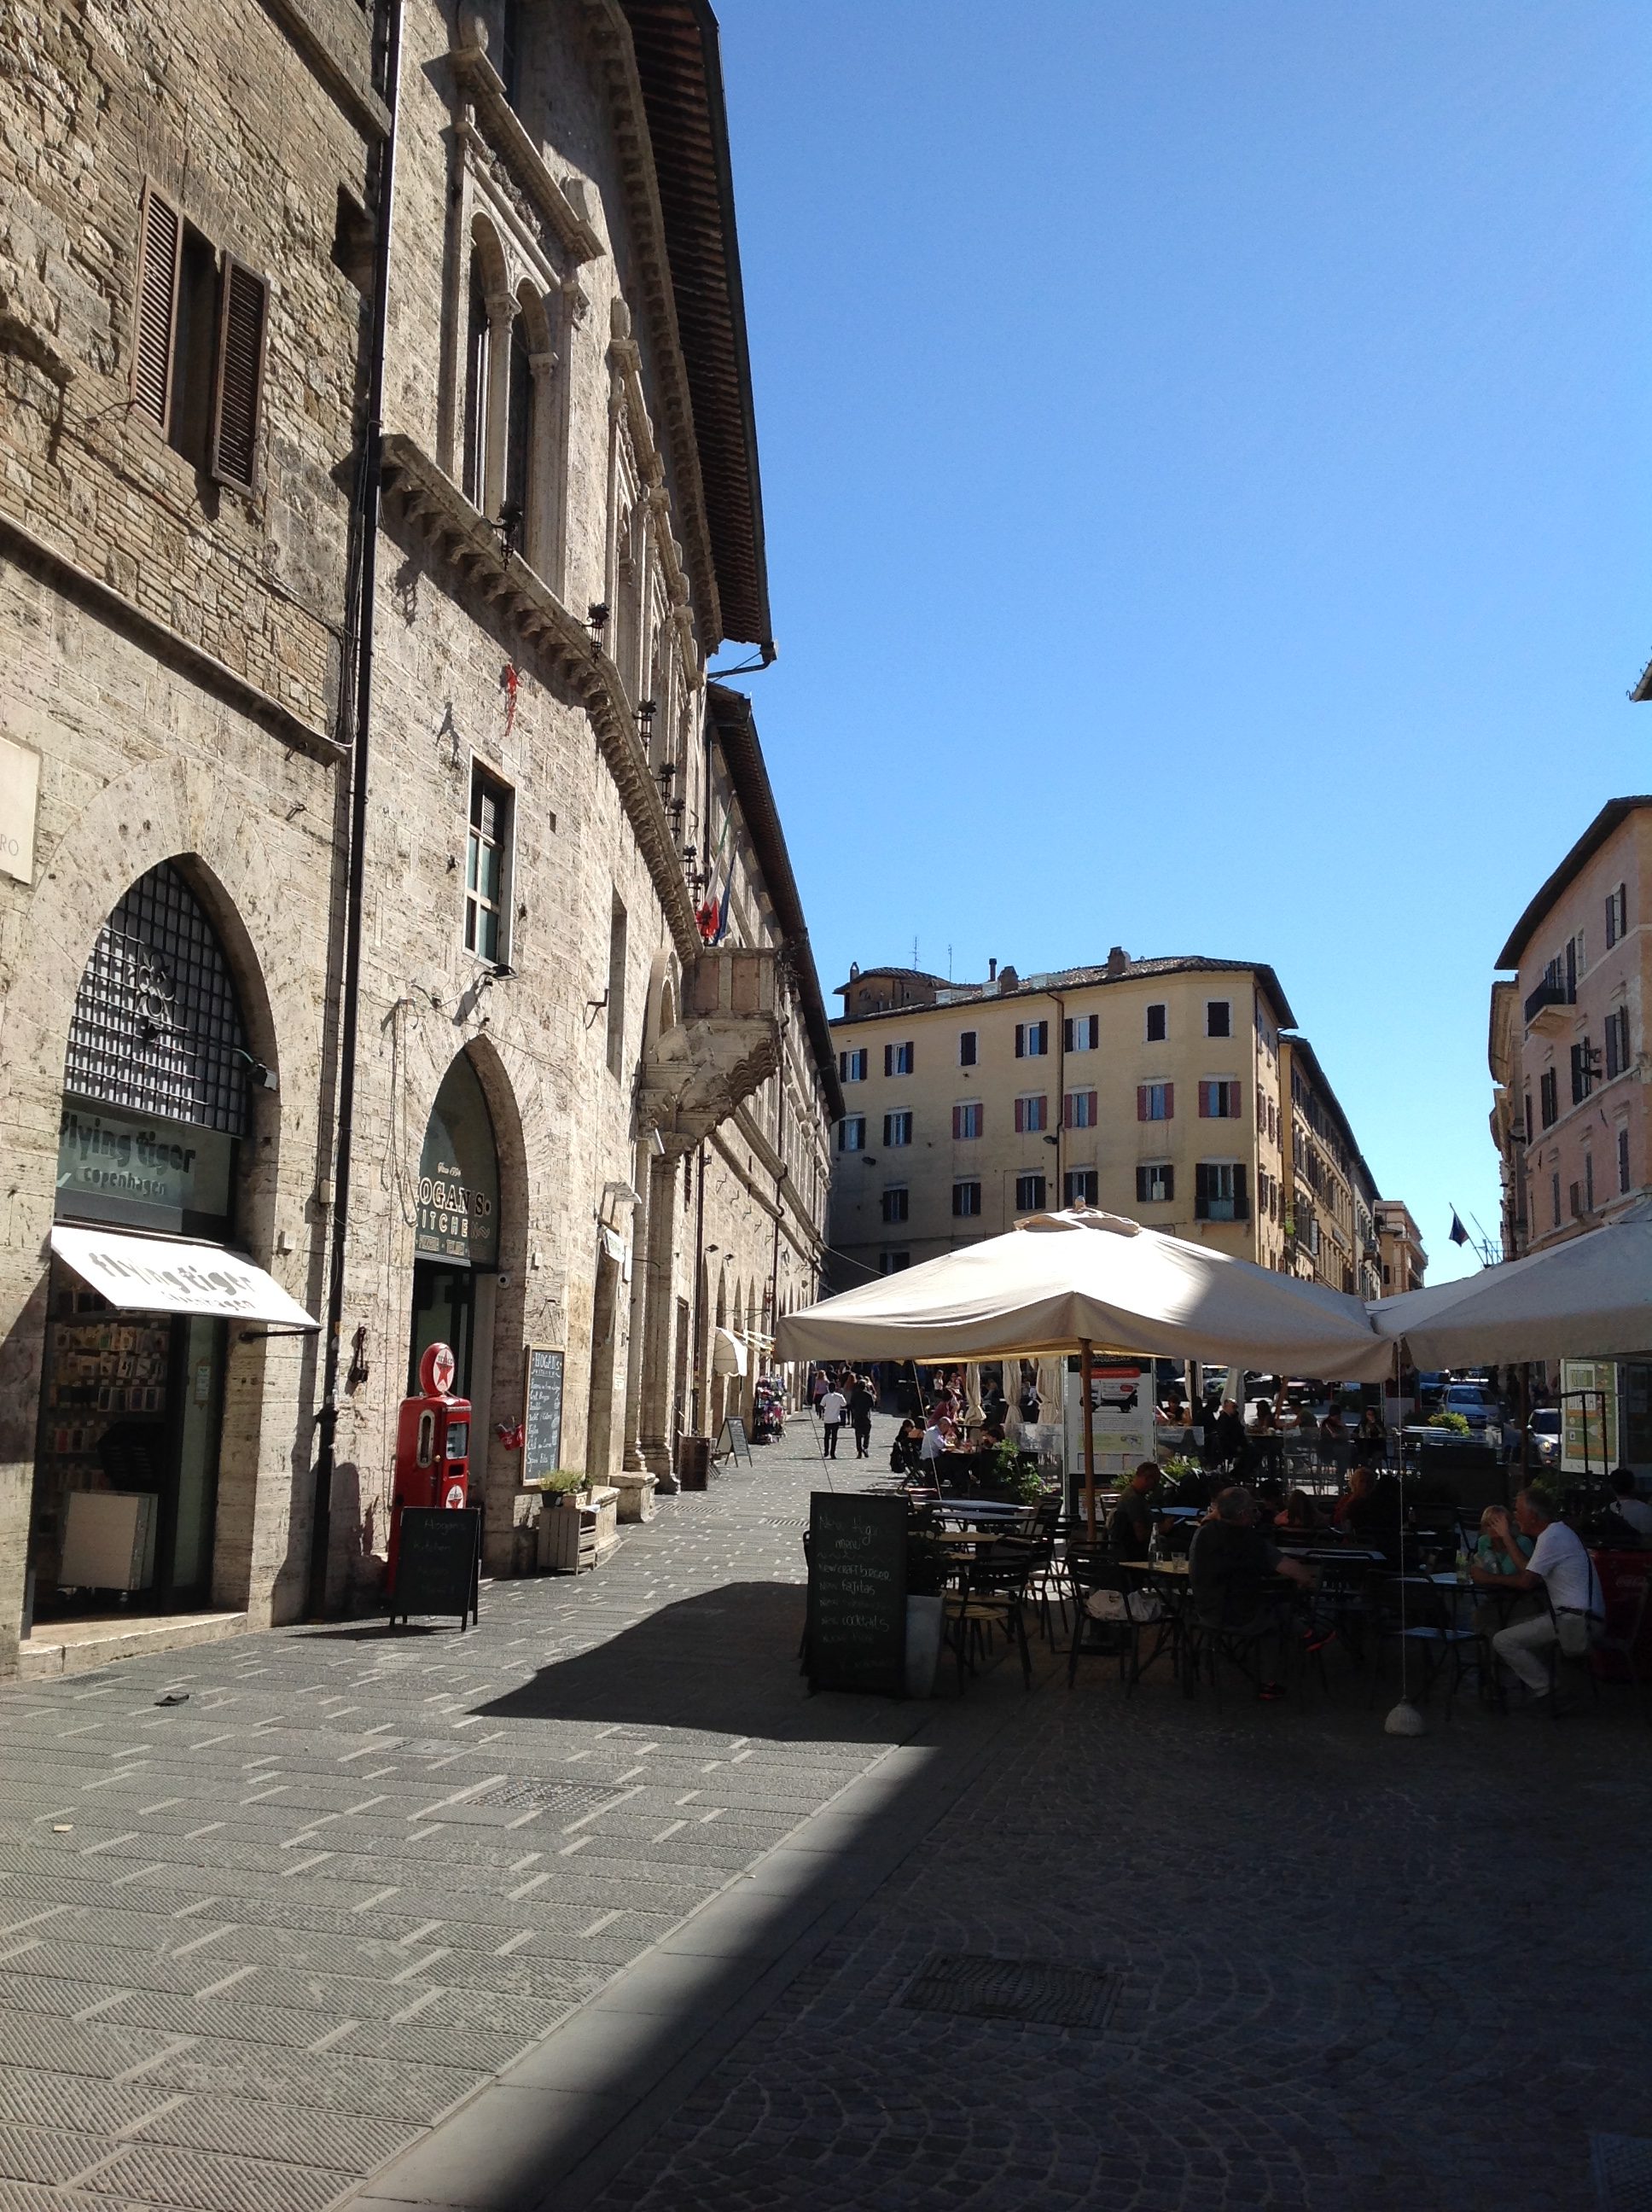 Piazzas of Perugia